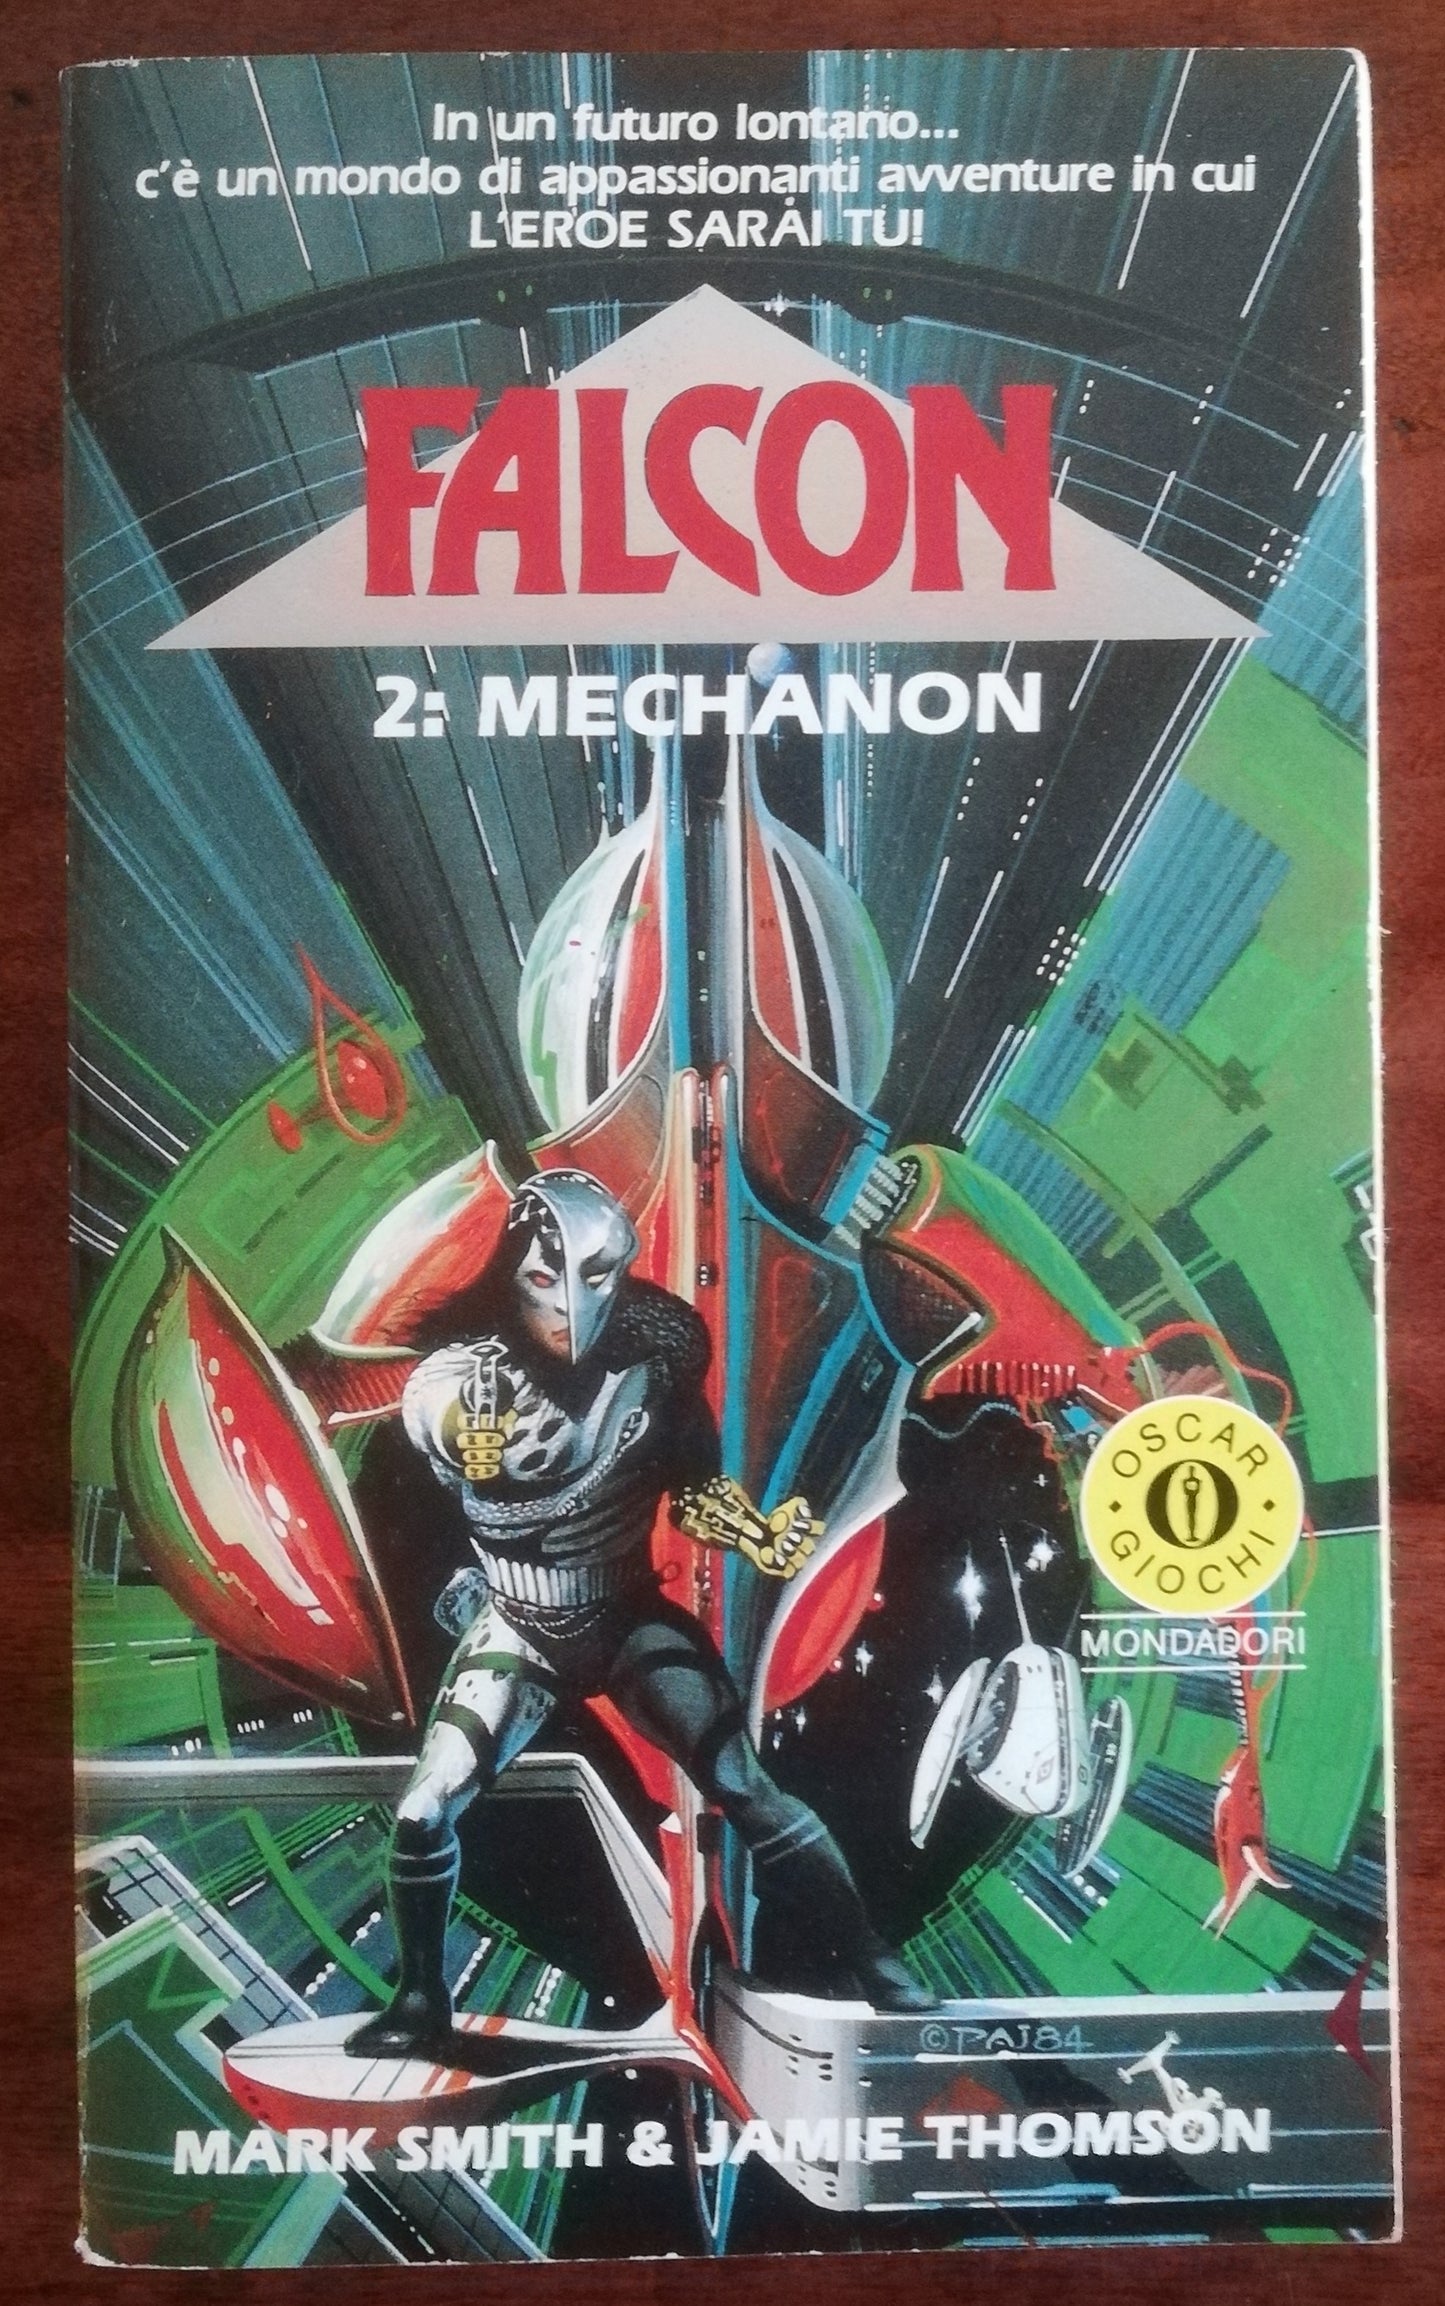 Falcon 2: Mechanon - Mondadori